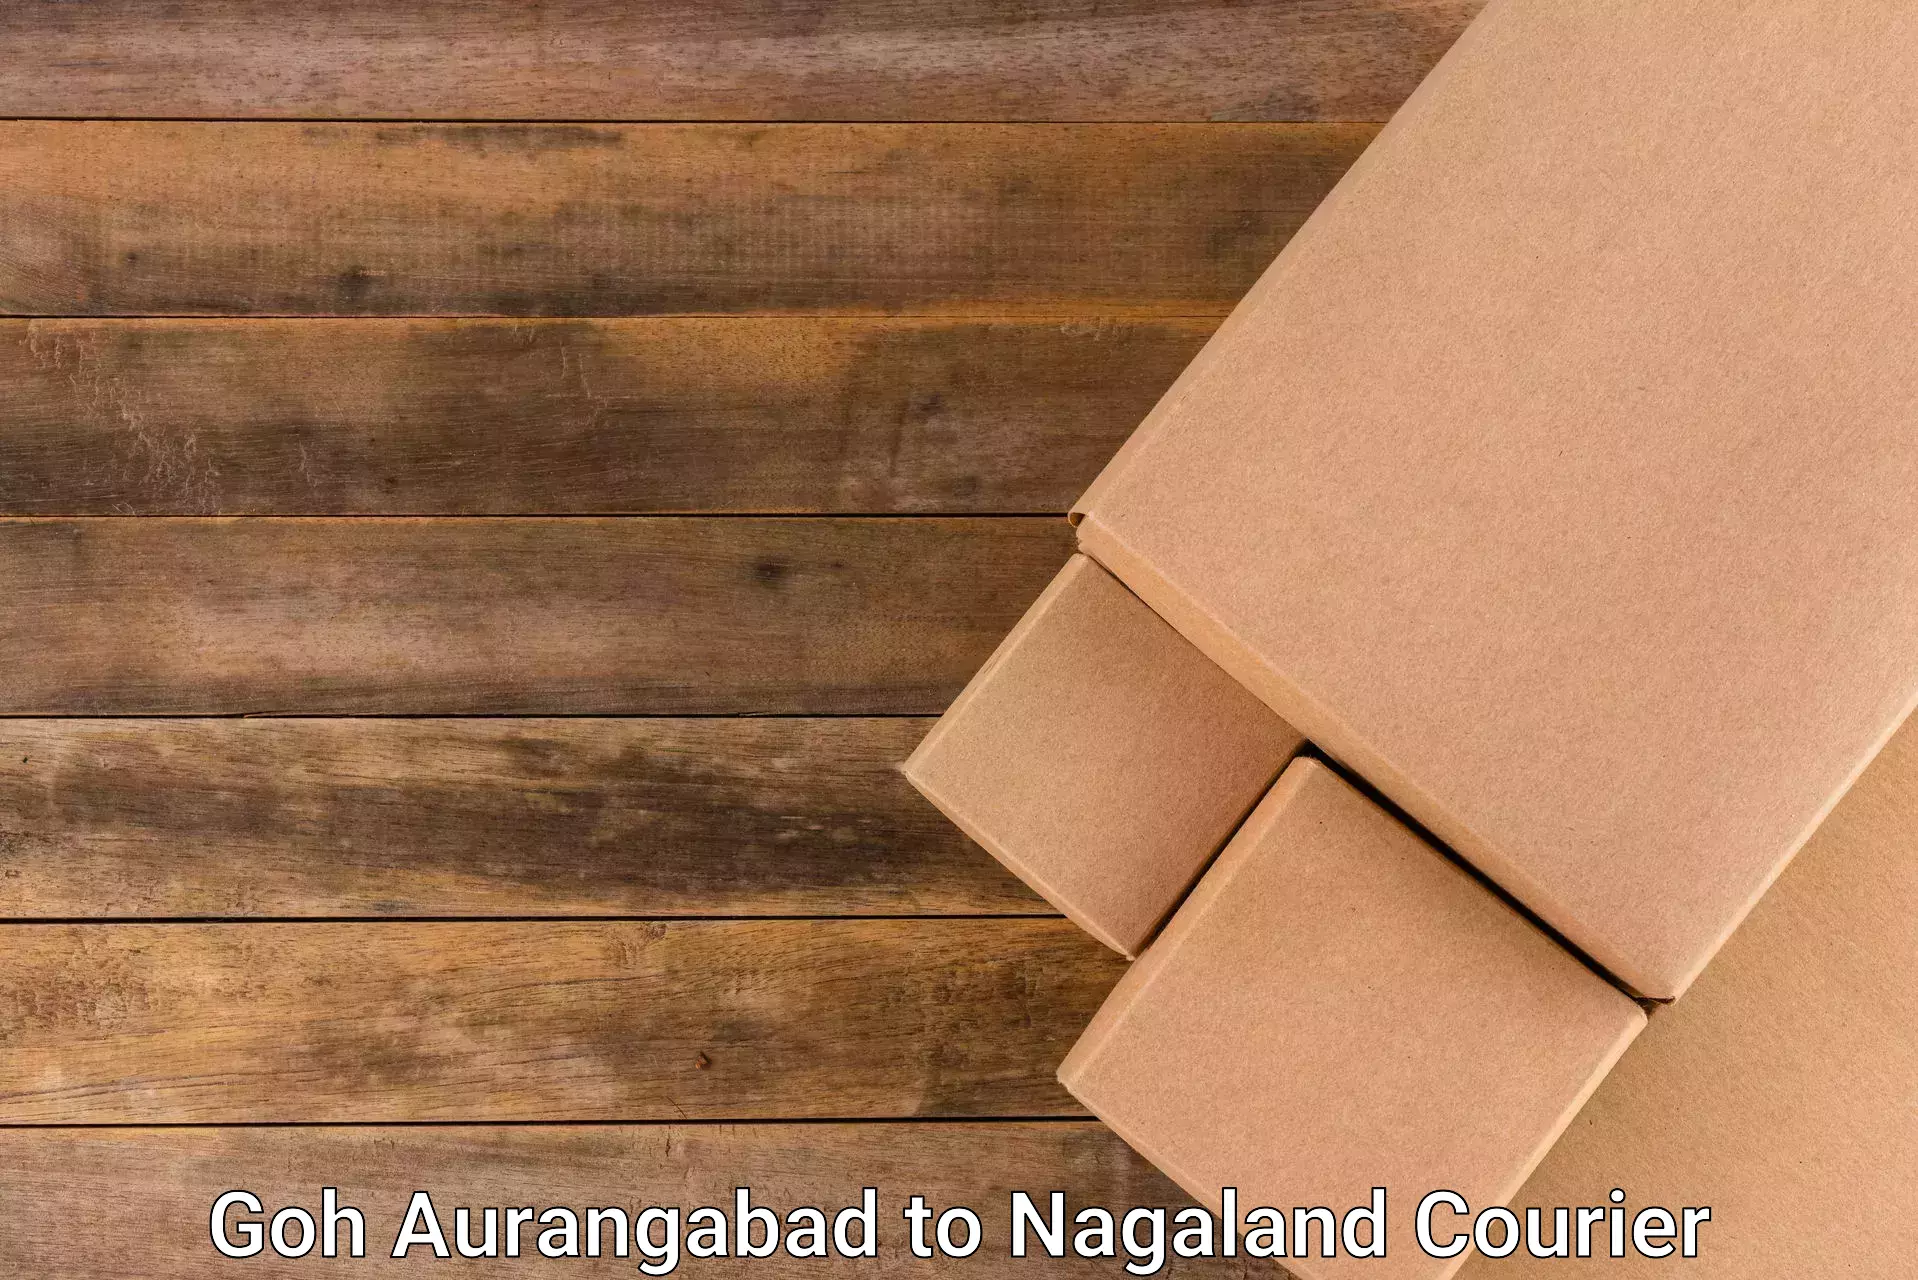 Reliable courier services Goh Aurangabad to Peren